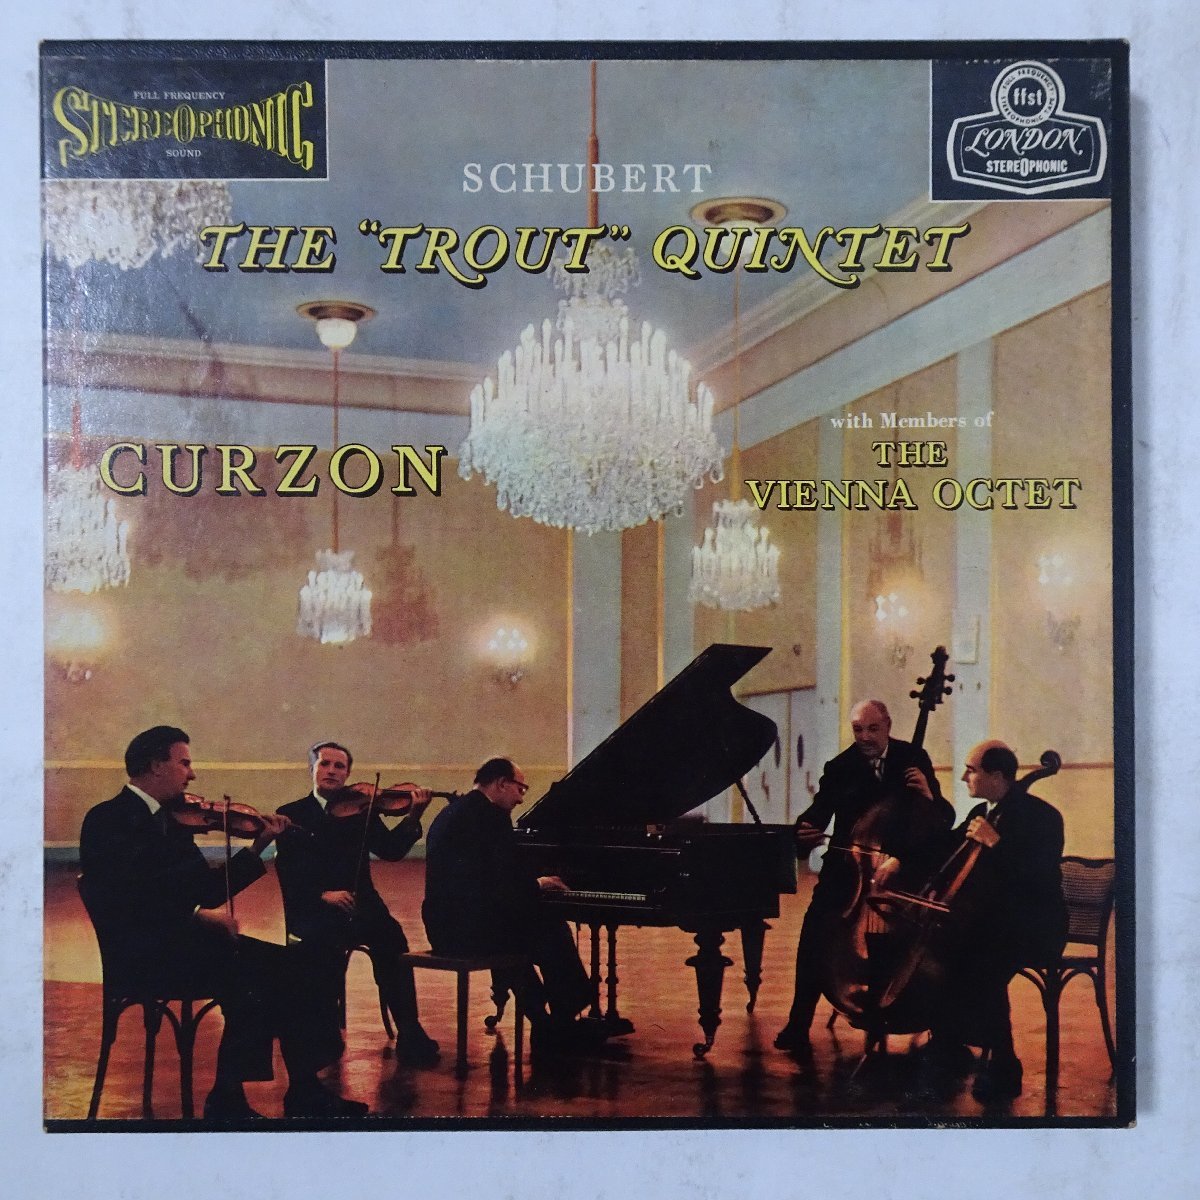 15005762;【7号オープンリールテープ/US盤!】The Trout Quintet / Schubert / Clifford Curzon / Members of The Vienna Octet_画像1